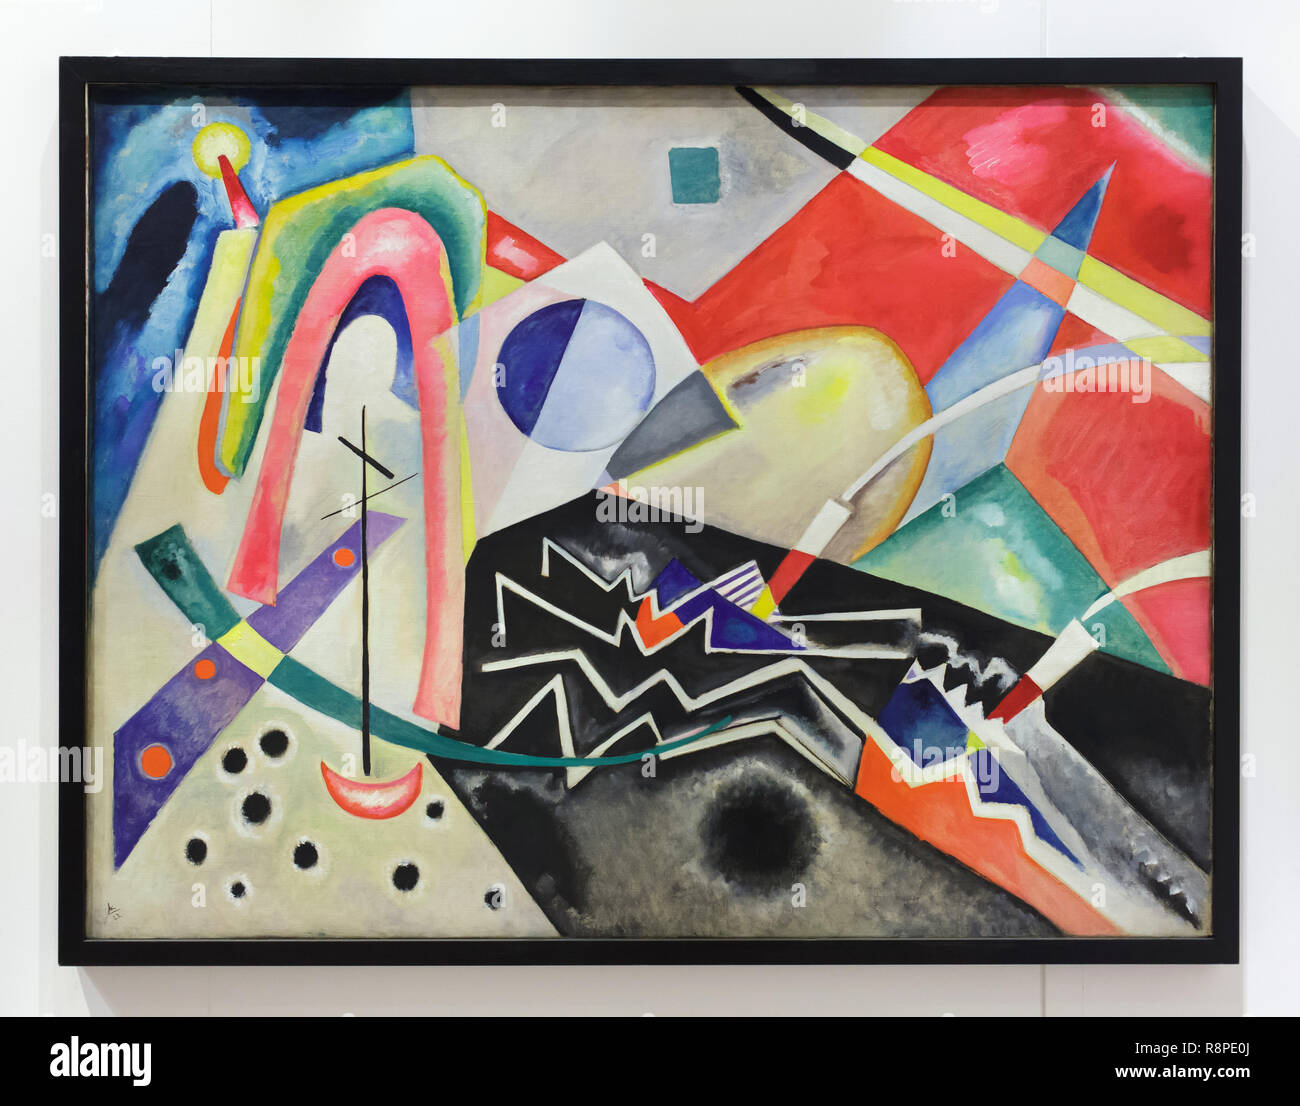 Gemälde "White Zig Zag" von russischen modernistischen Maler Wassily Kandinsky (1922) in der Internationalen Galerie für Moderne Kunst (Galleria Internazionale d'Arte Moderna) im Ca' Pesaro (Pesaro Palace) in Venedig, Italien. Stockfoto